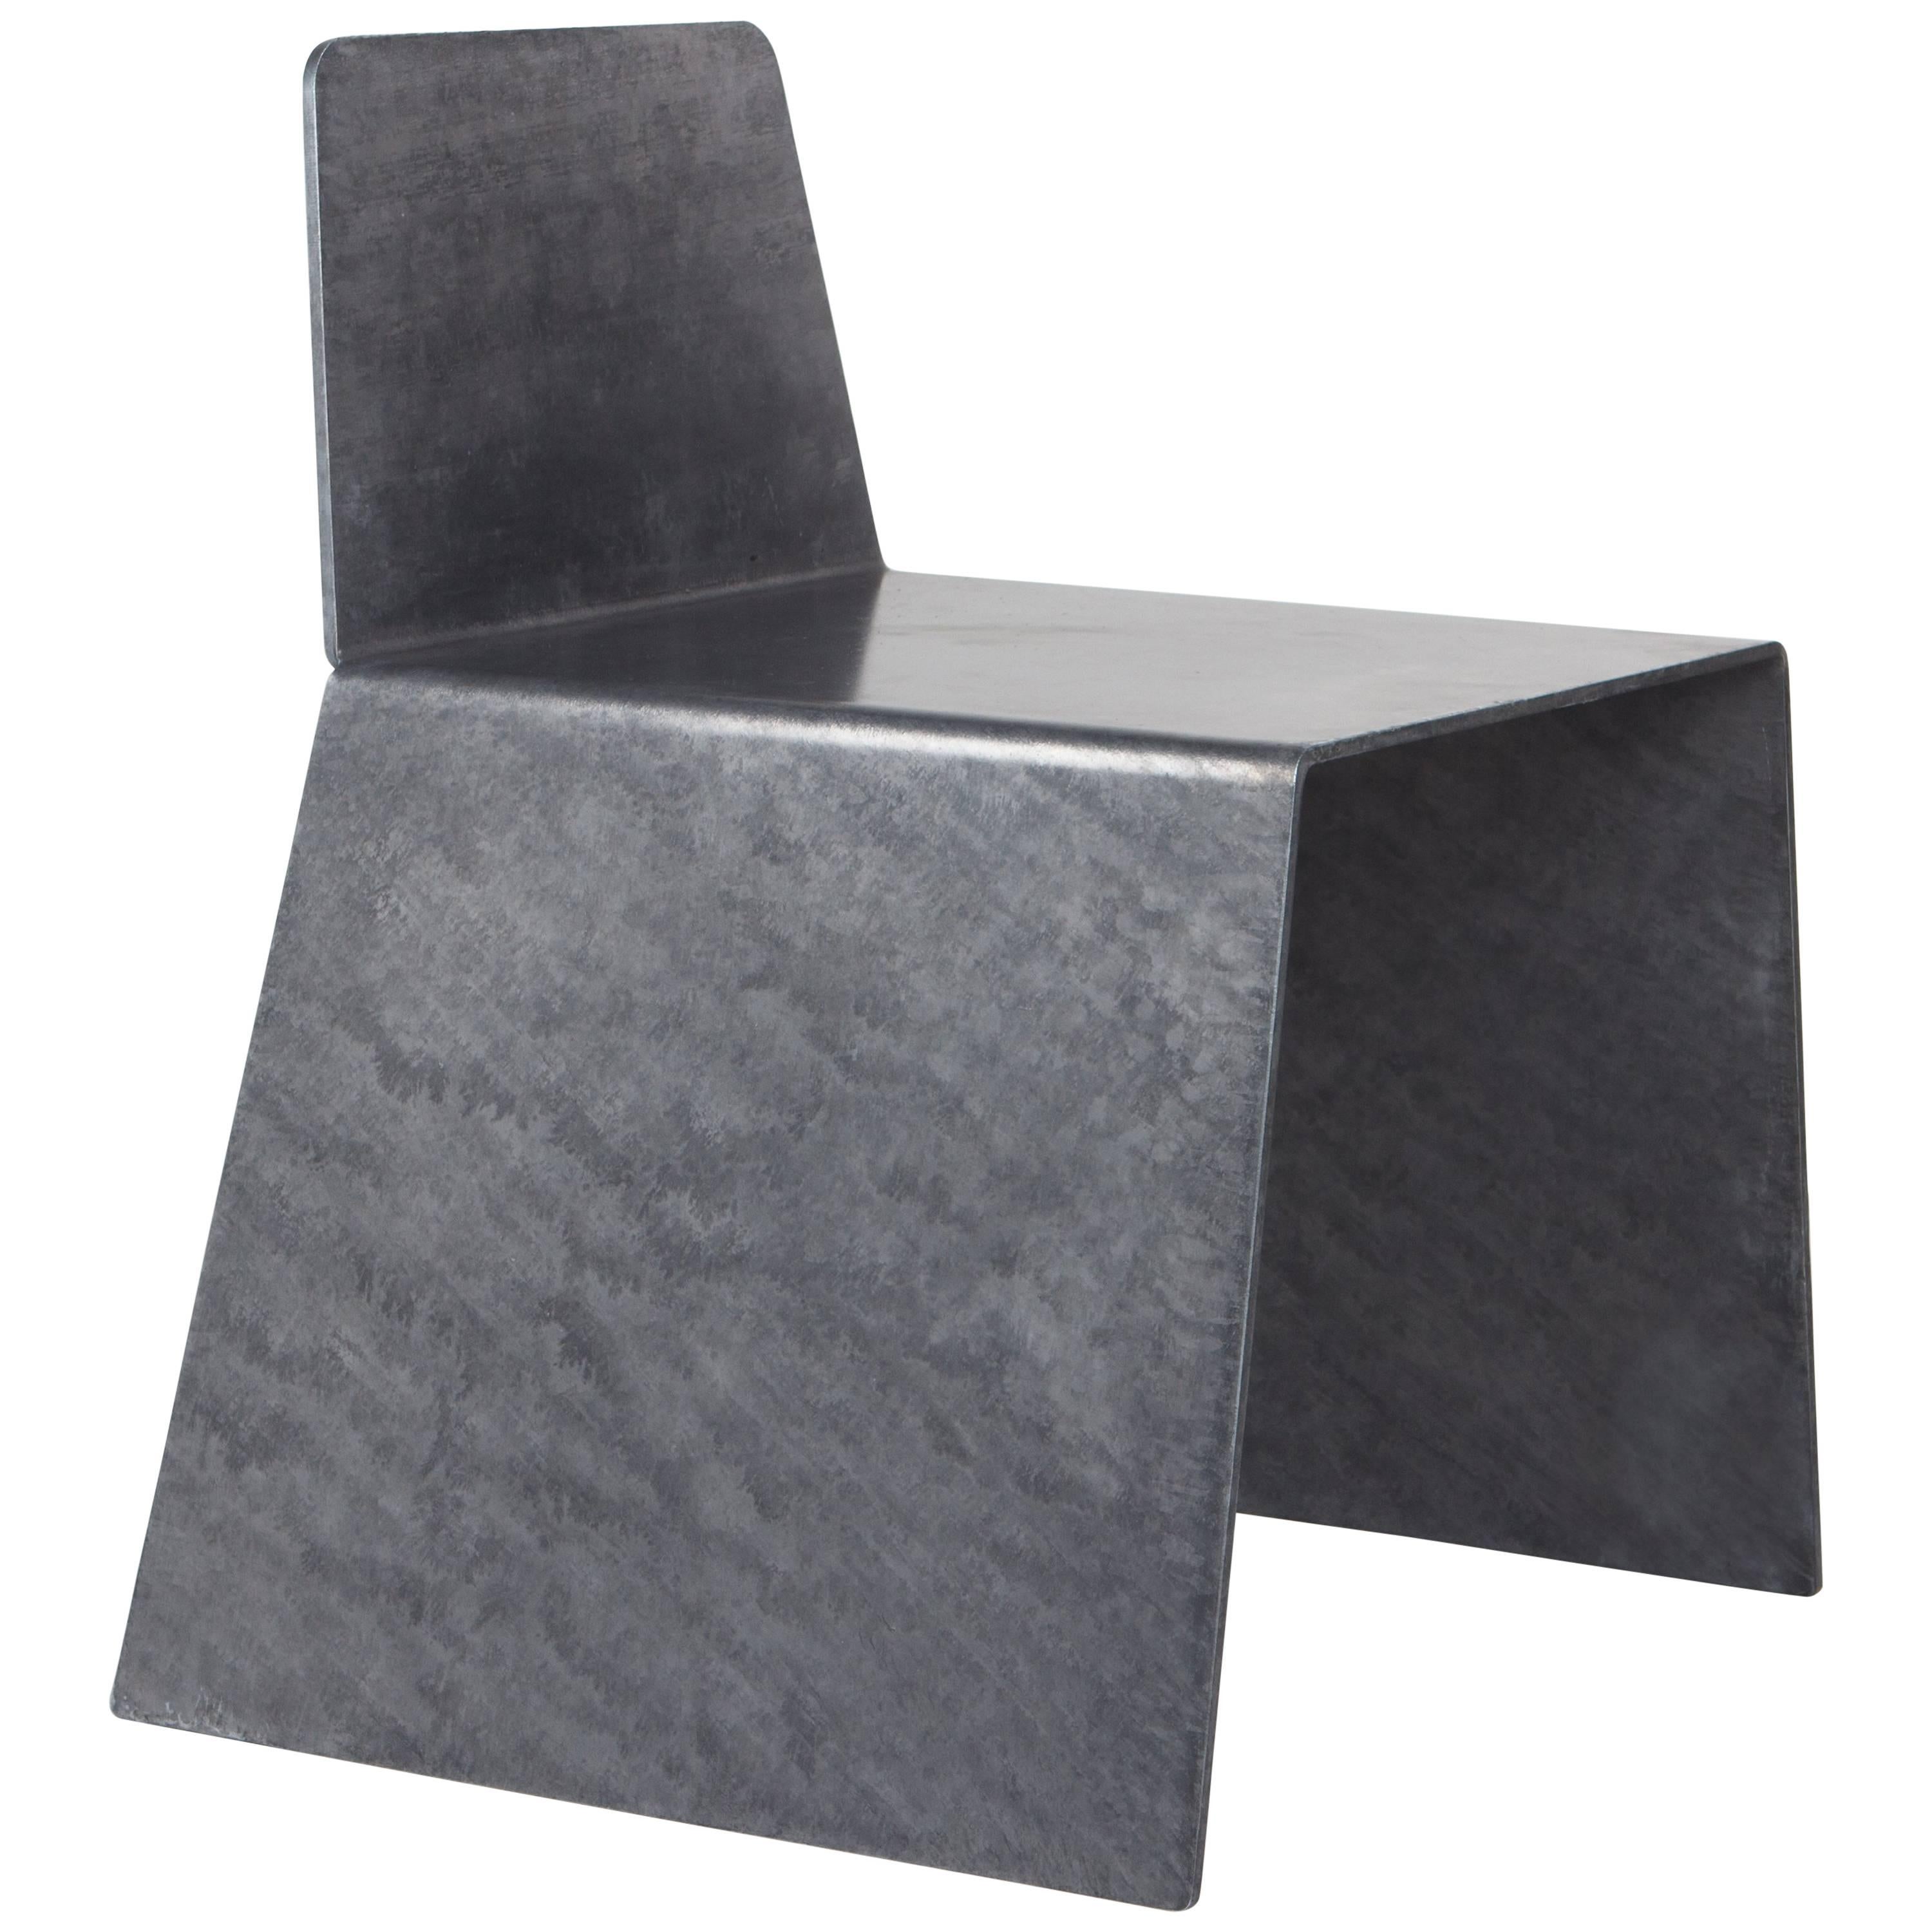 Chaise d'appoint en acier galvanisé à chaud. Fabriqué d'une seule pièce d'une plaque d'acier de 0,25